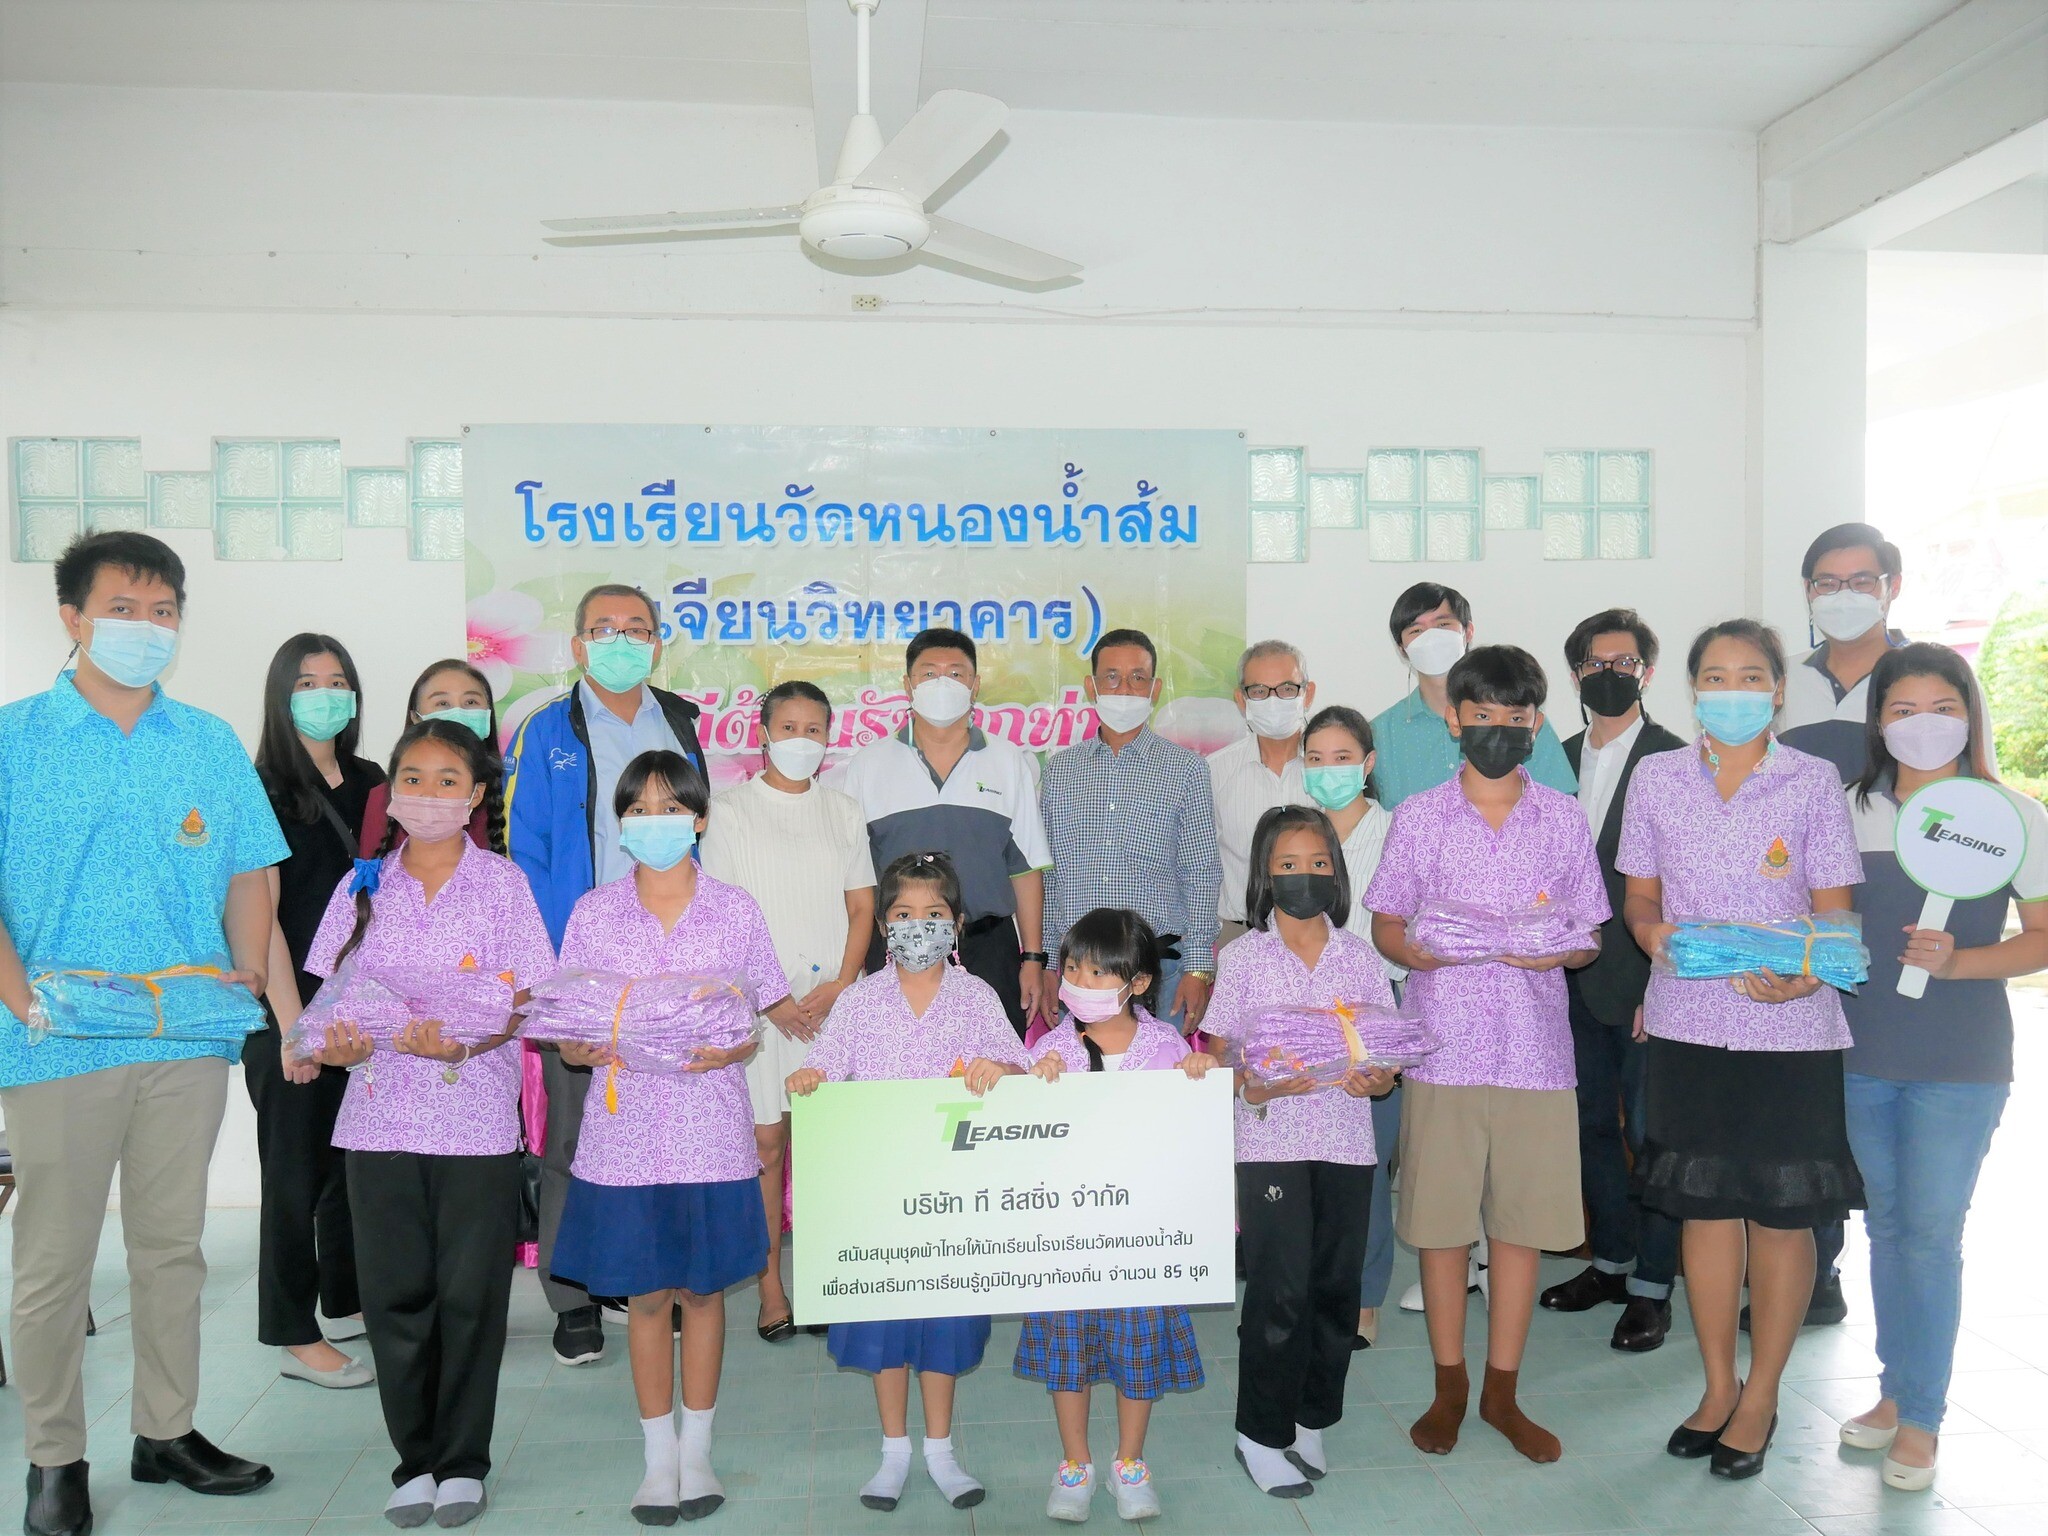 ที ลีสซิ่ง ส่งมอมชุดนักเรียนผ้าไทยให้กับนักเรียน สนับสนุนการเรียนรู้ภูมิปัญญาท้องถิ่น